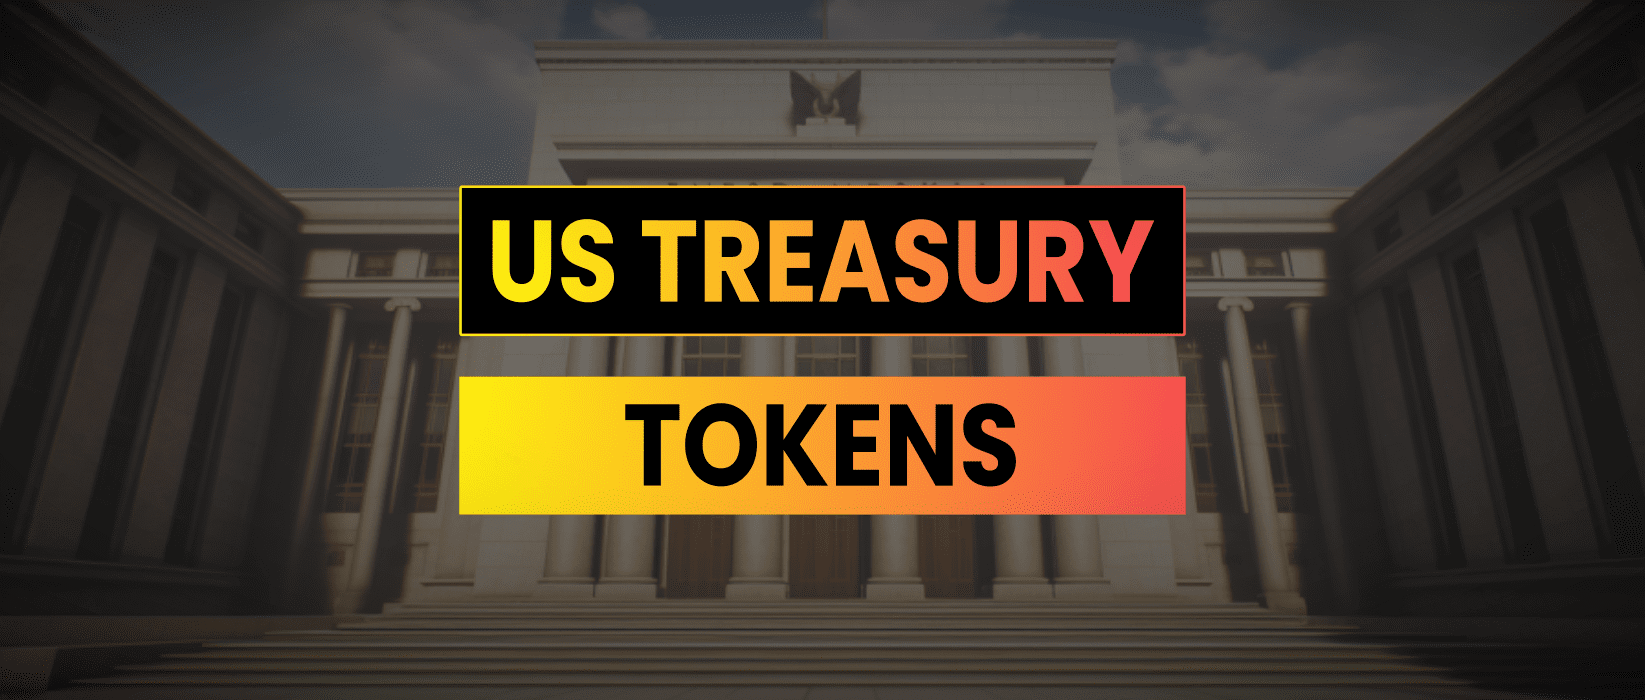 Tokenized US Treasuries | Ondo Finance vs MatrixDock